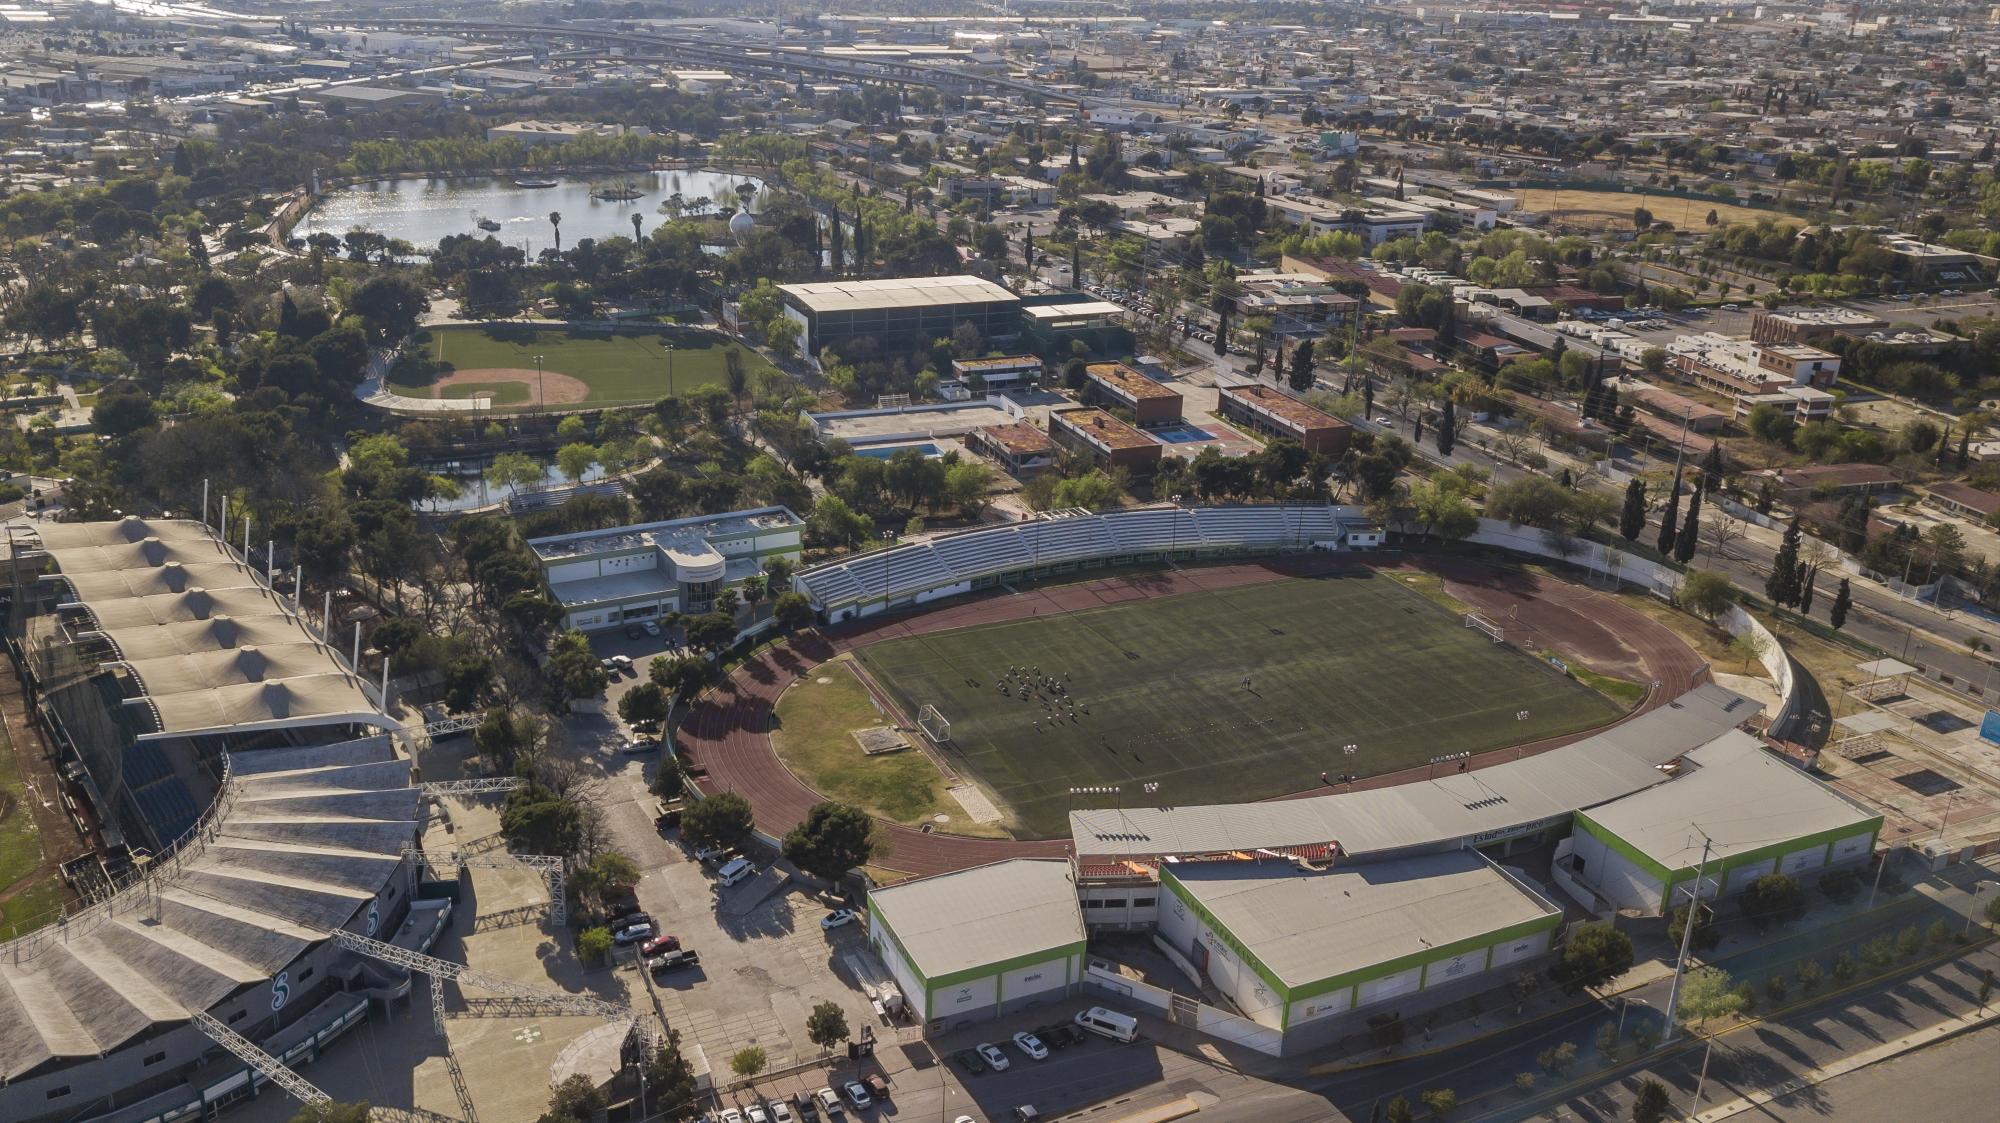 $!Vista aérea de una parte del complejo que conforma la Ciudad Deportiva.